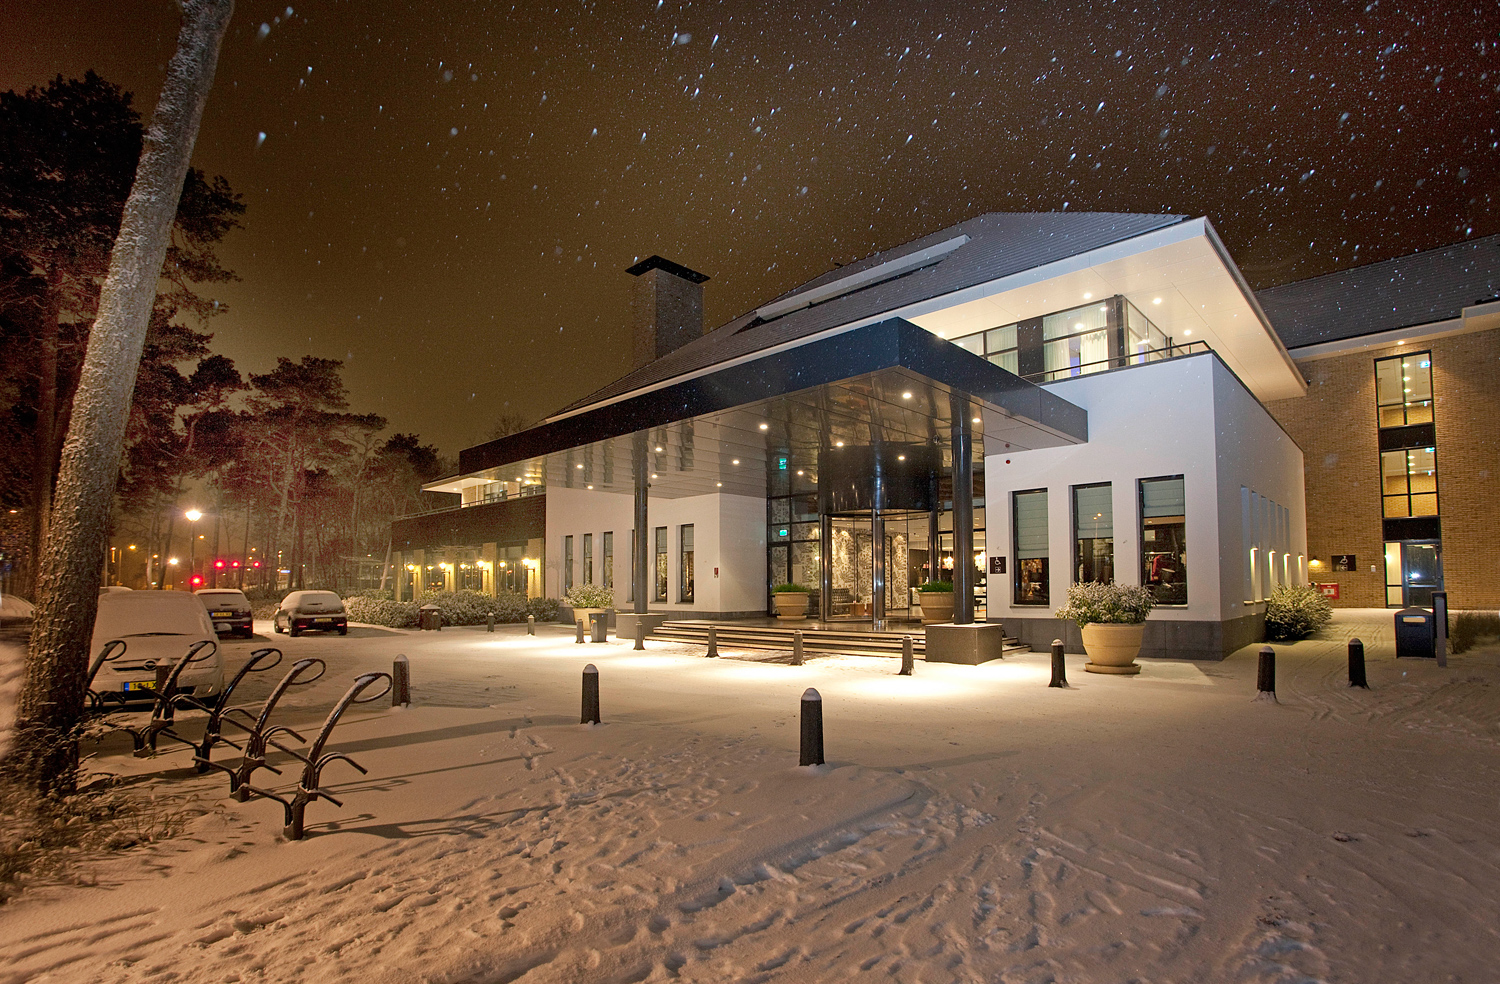 Hotel Harderwijk op de Veluwe - 3 Nächte Winter Special